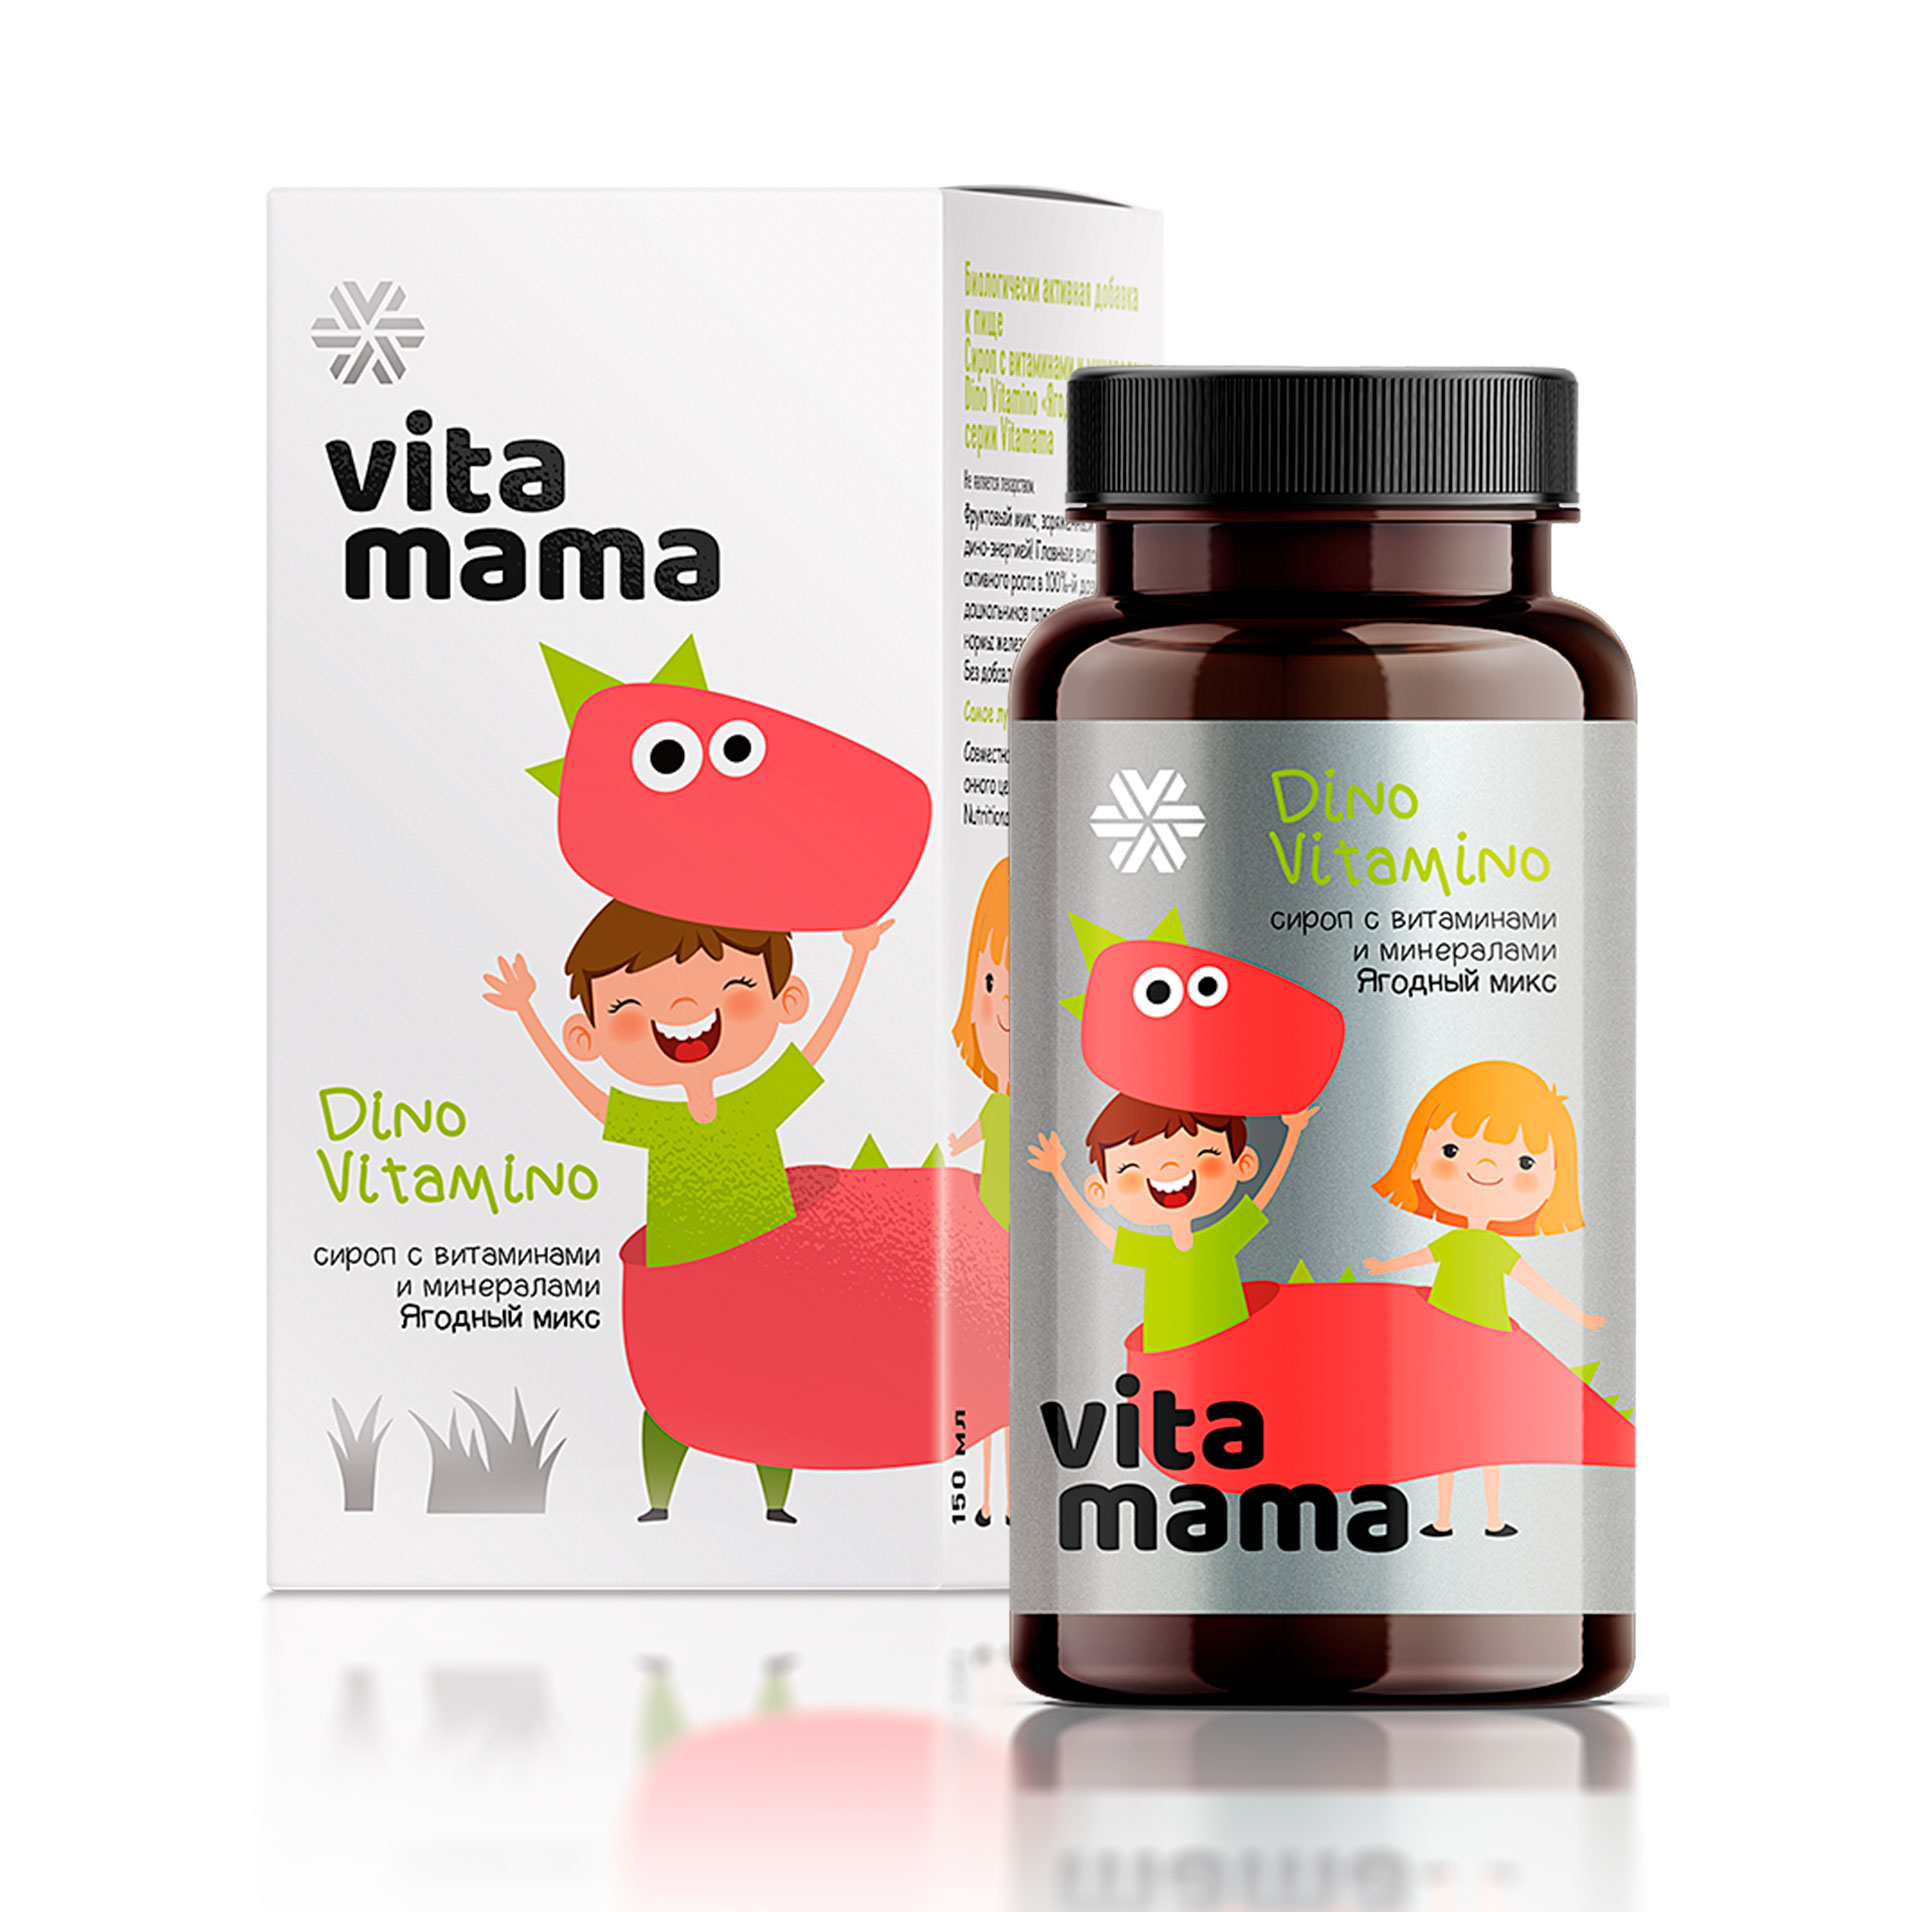 Изображение отсутствует.
			Купить Dino Vitamino, ягодный сироп с витаминами и минералами - Vitamama //  // 